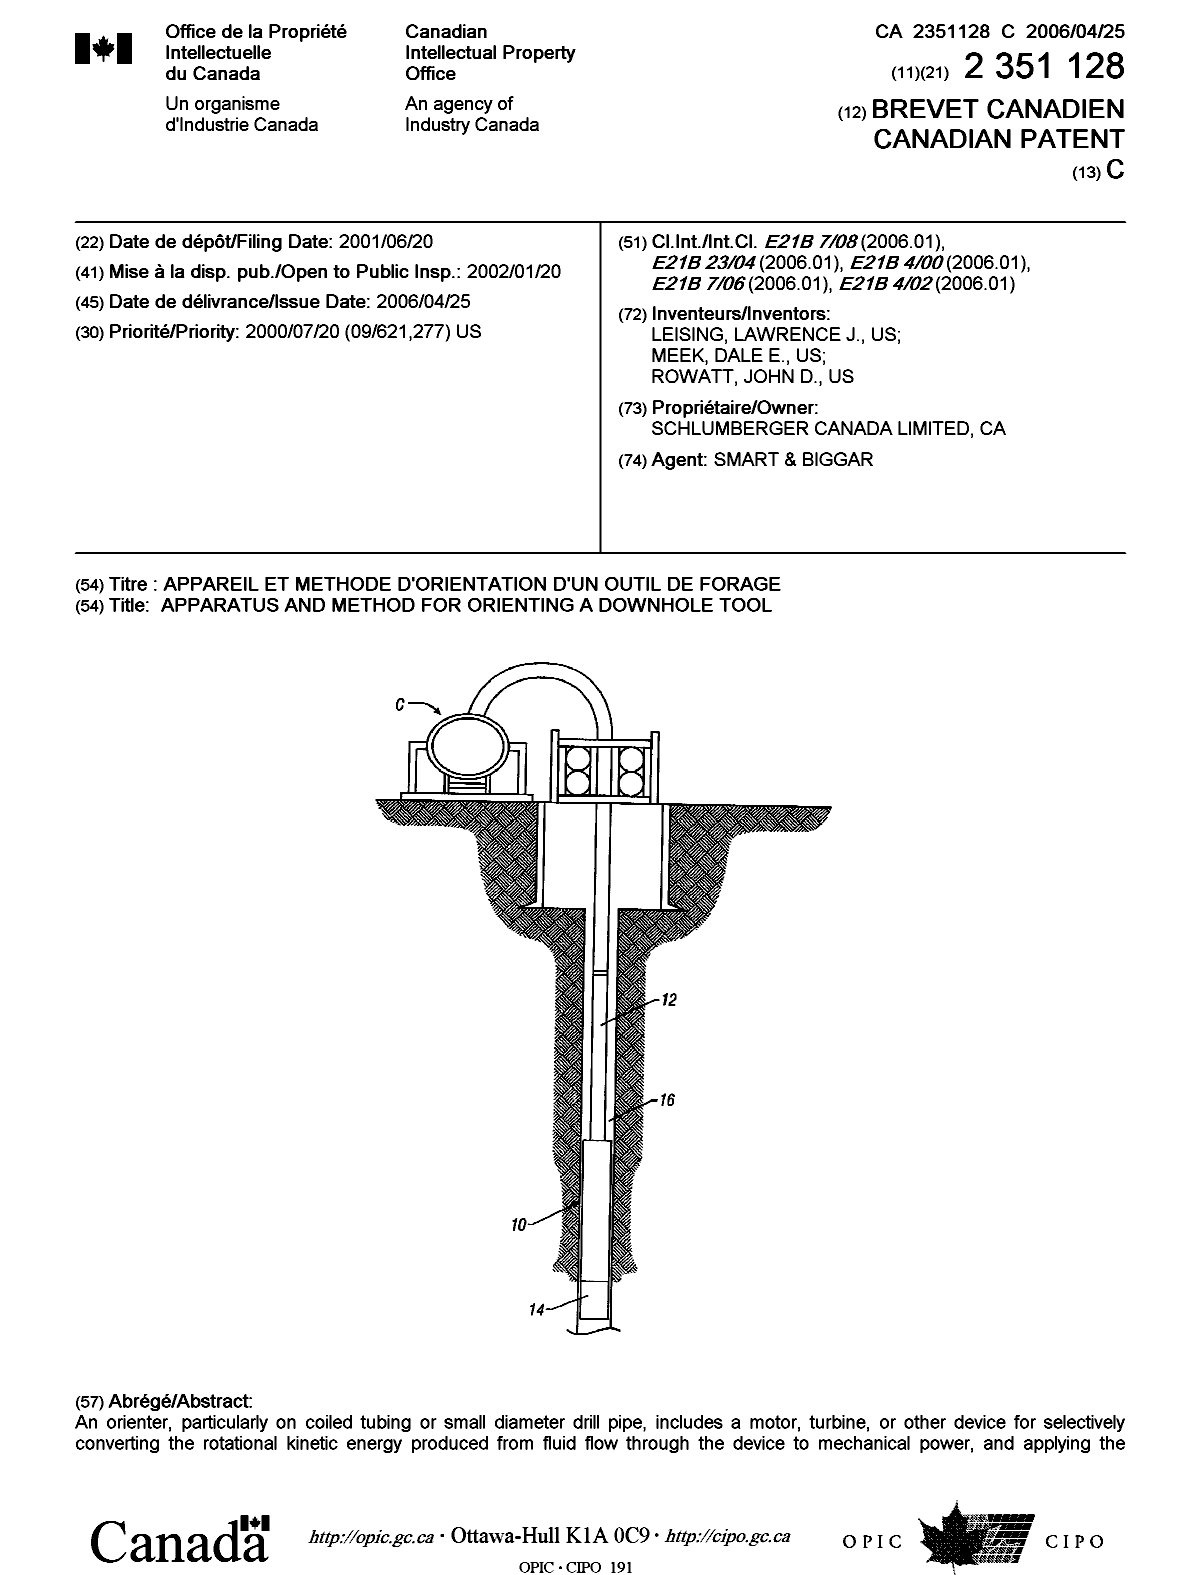 Document de brevet canadien 2351128. Page couverture 20060324. Image 1 de 2